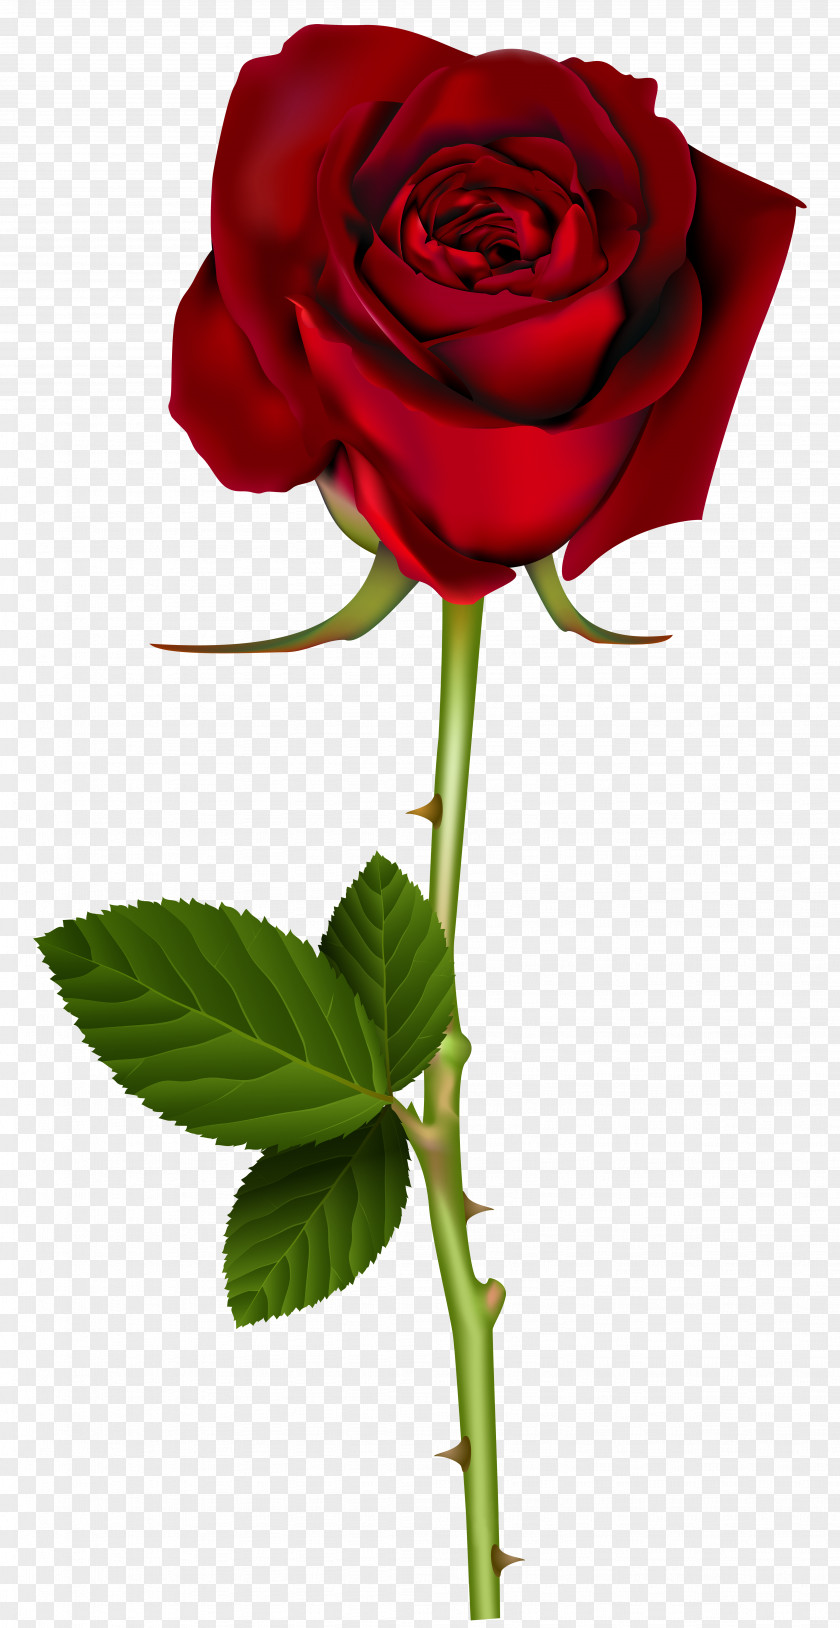 Red Rose Transparent Image Clip Art PNG